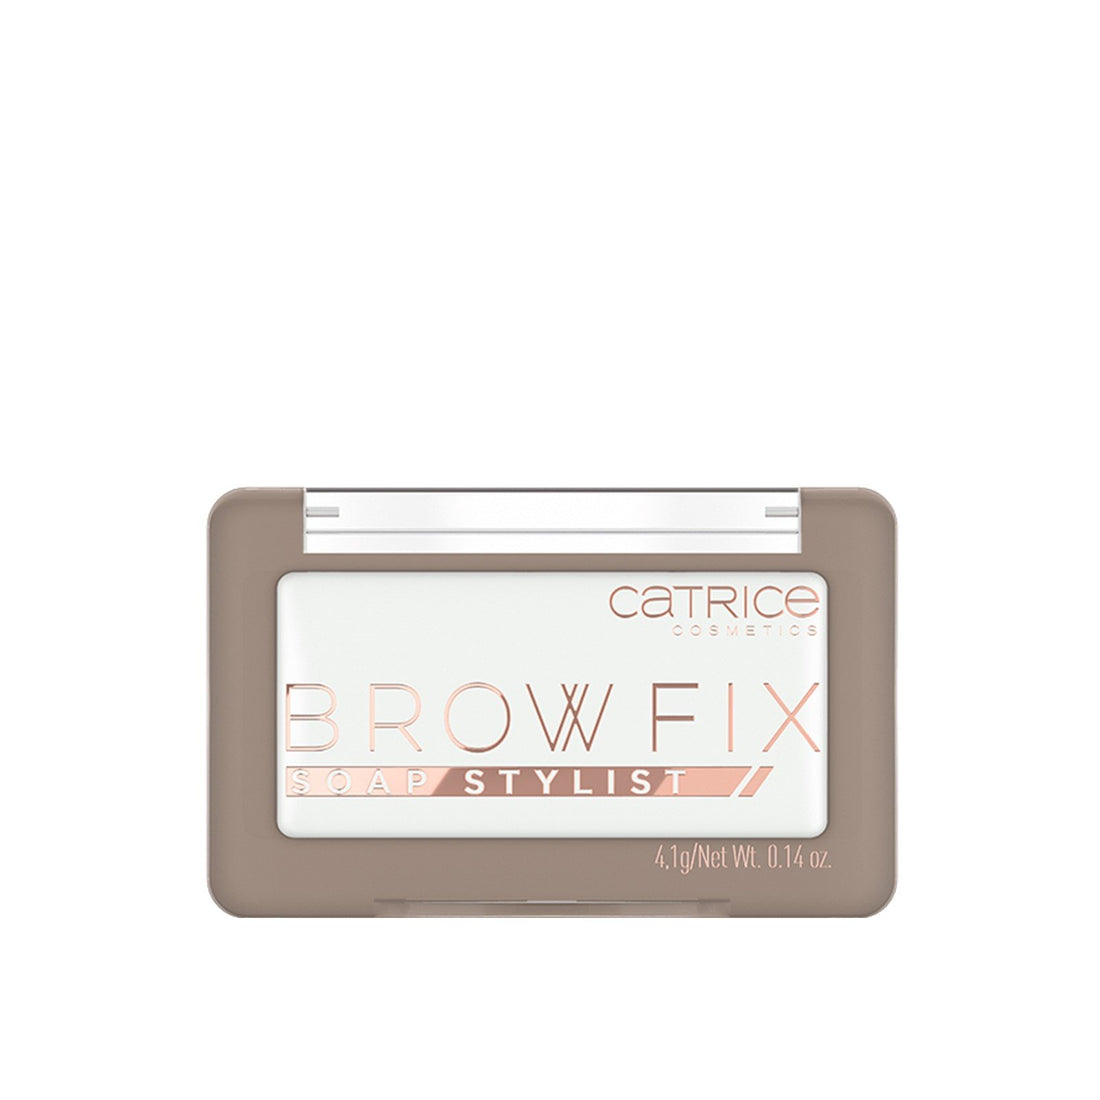 Catrice Brow Fix Soap Stylist 010 Plein et moelleux 4,1 g (0,14 oz)